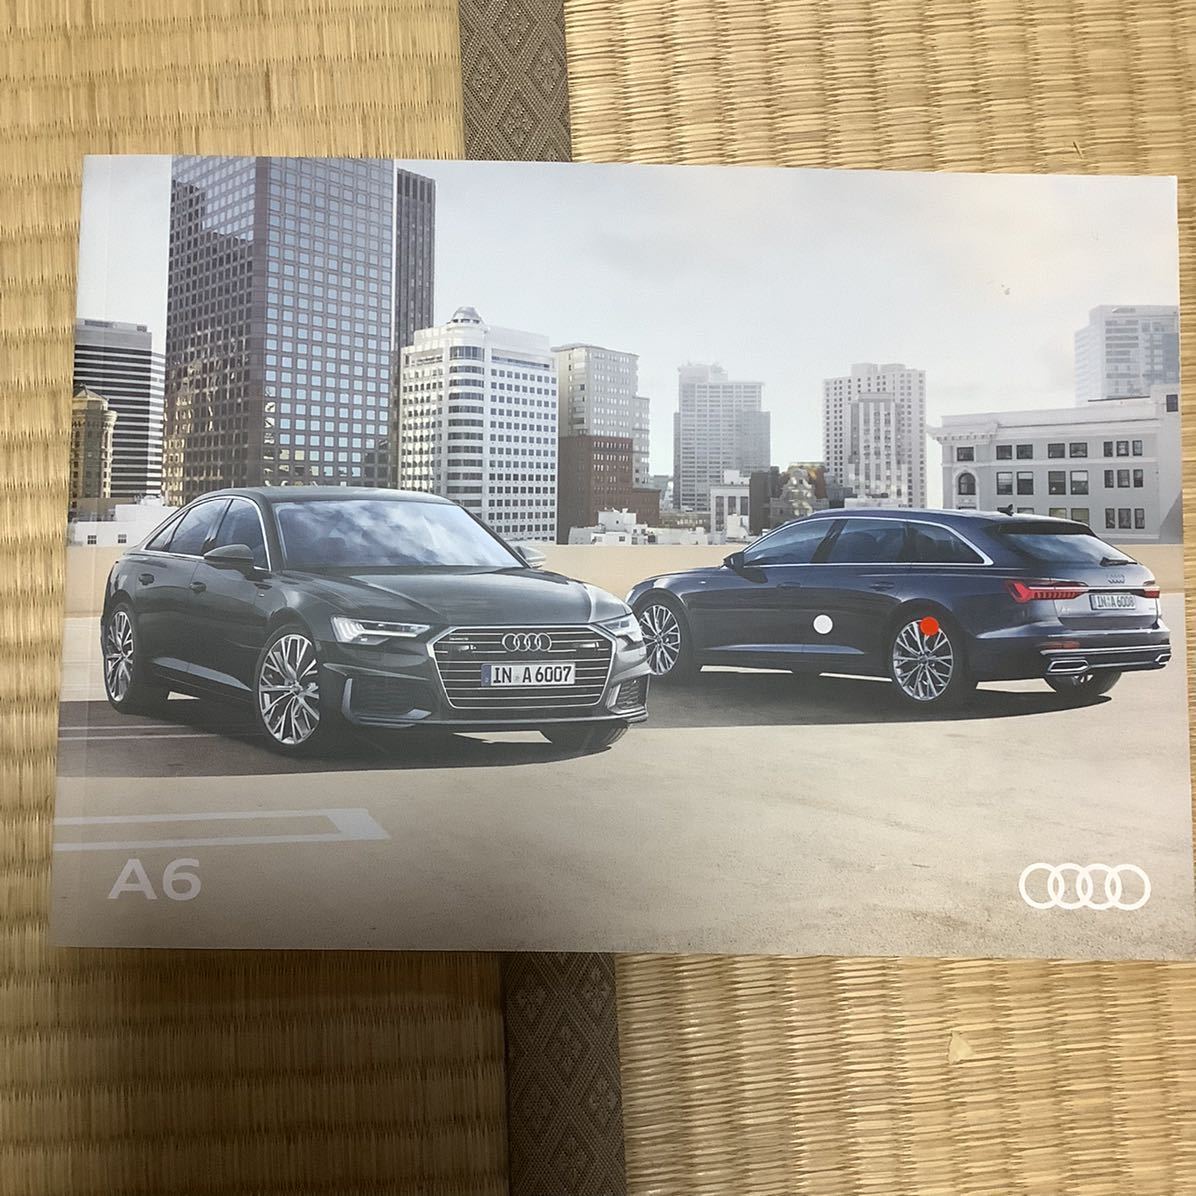 N20 Audi catalog A6 sedan Avante 1 pcs. please select 